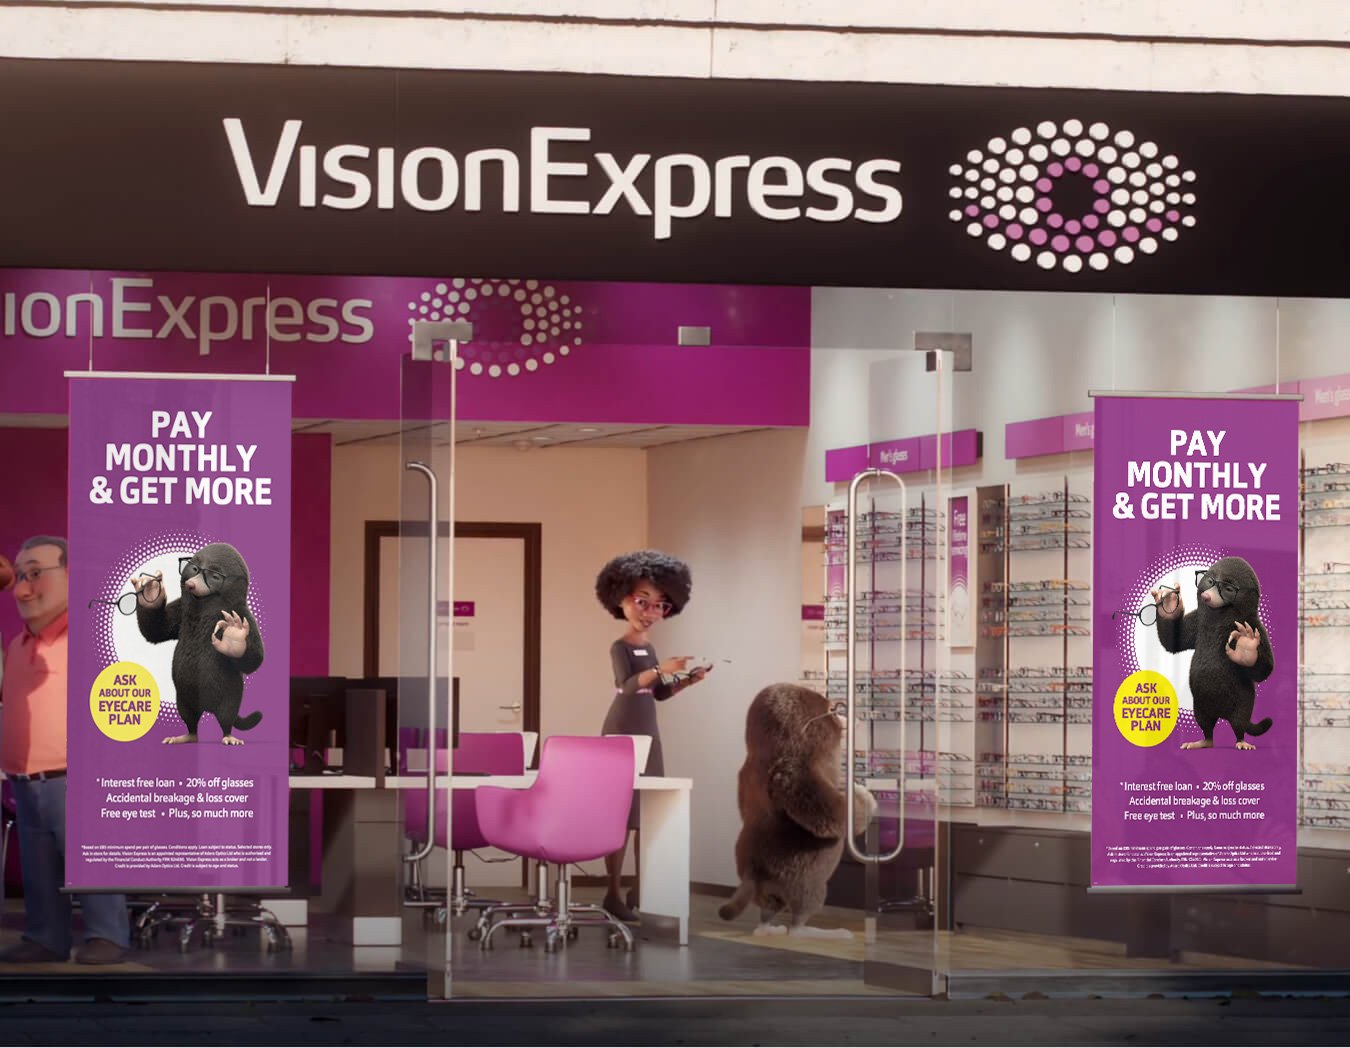 Bestill en øyetest på nett | Visjon Express